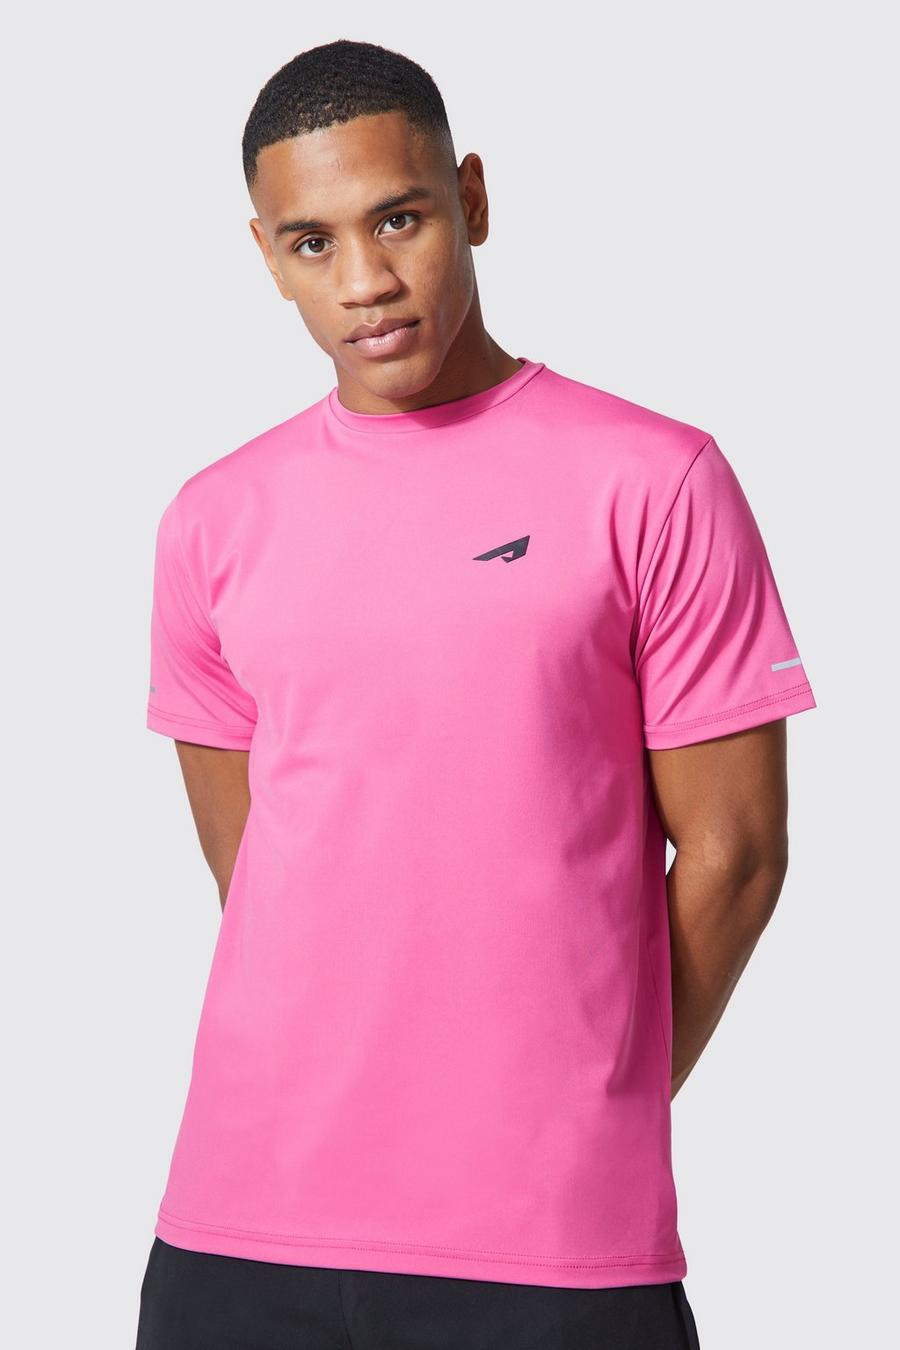 Camiseta Active resistente con logo, Bright pink